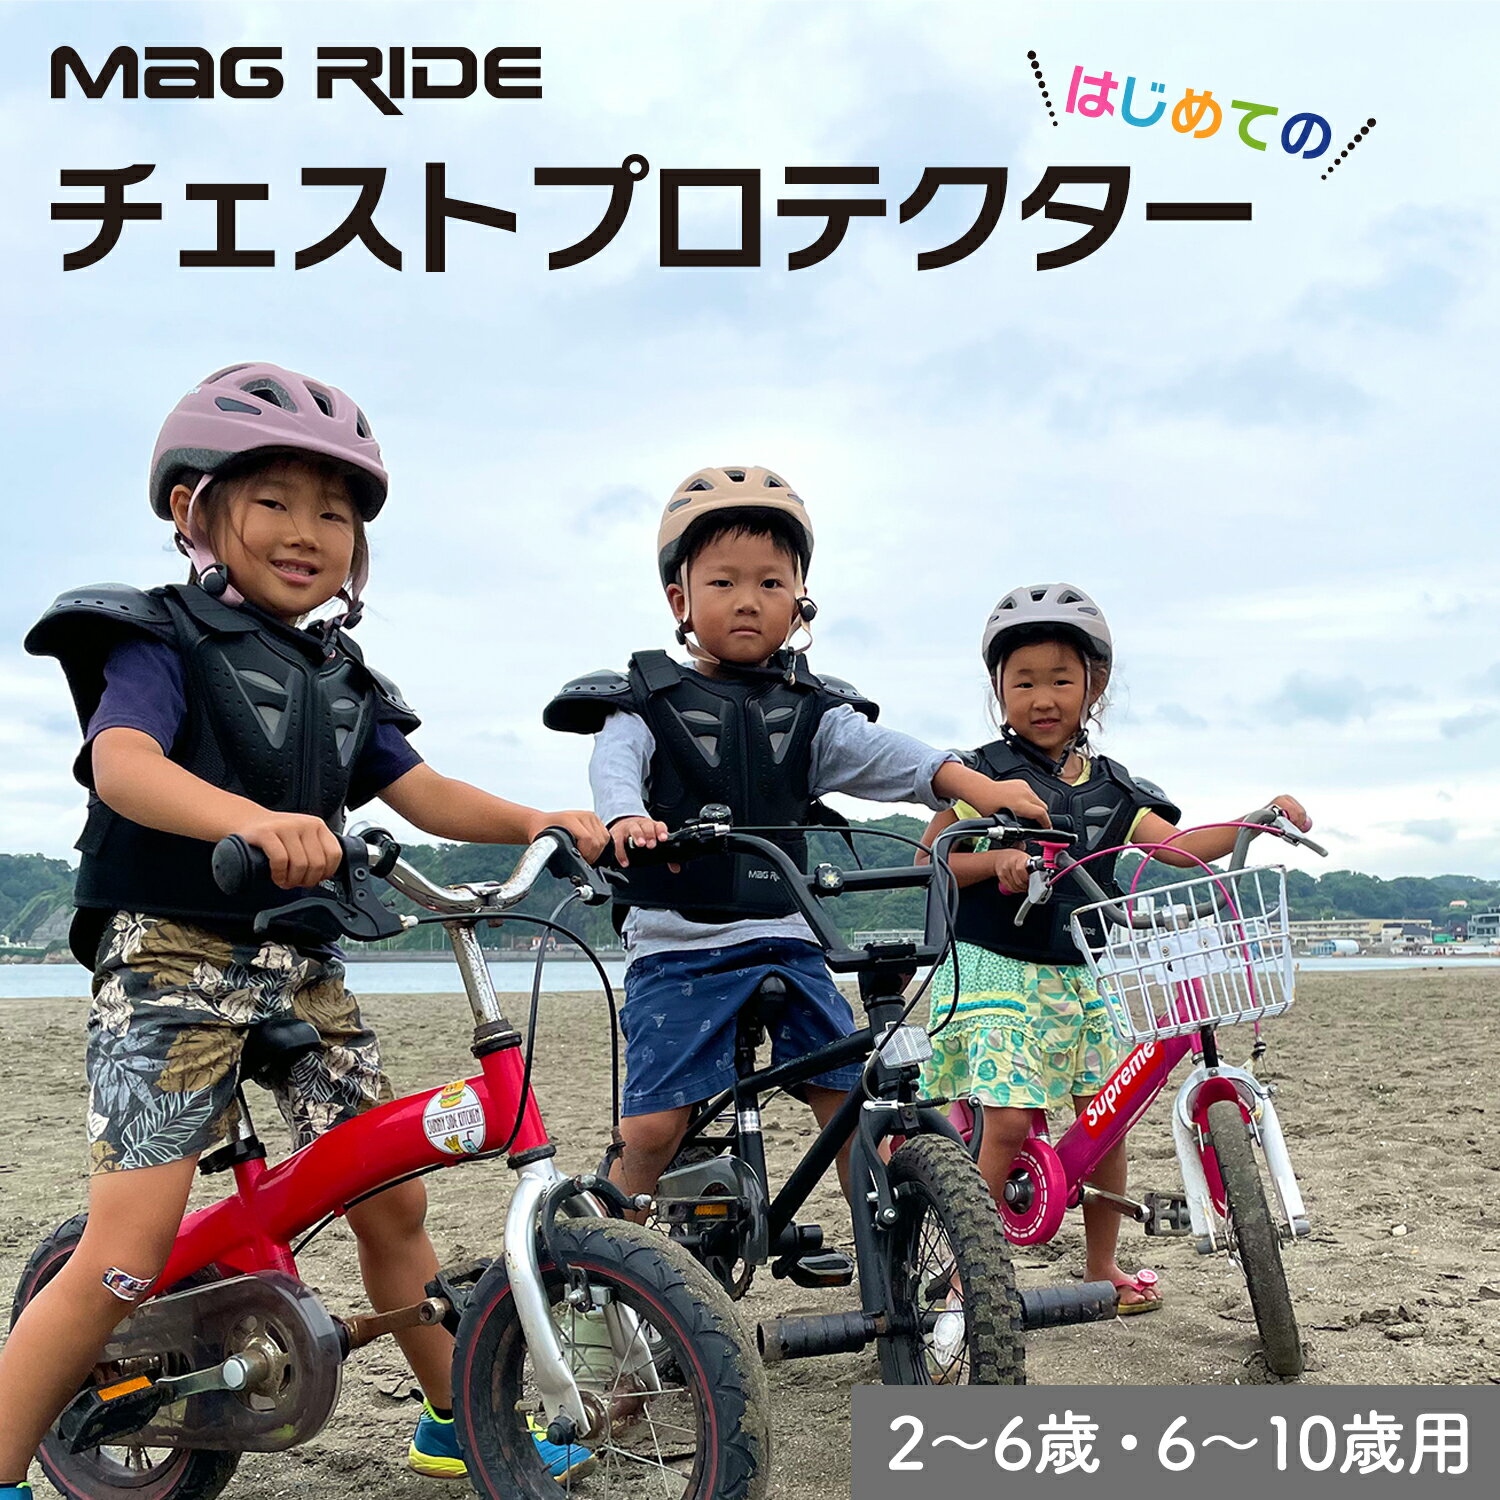 Mag Ride プロテクター チェスト 胸用 日本最小設計 2歳から 10歳 子供 モトクロス BMX スケボー キッ..